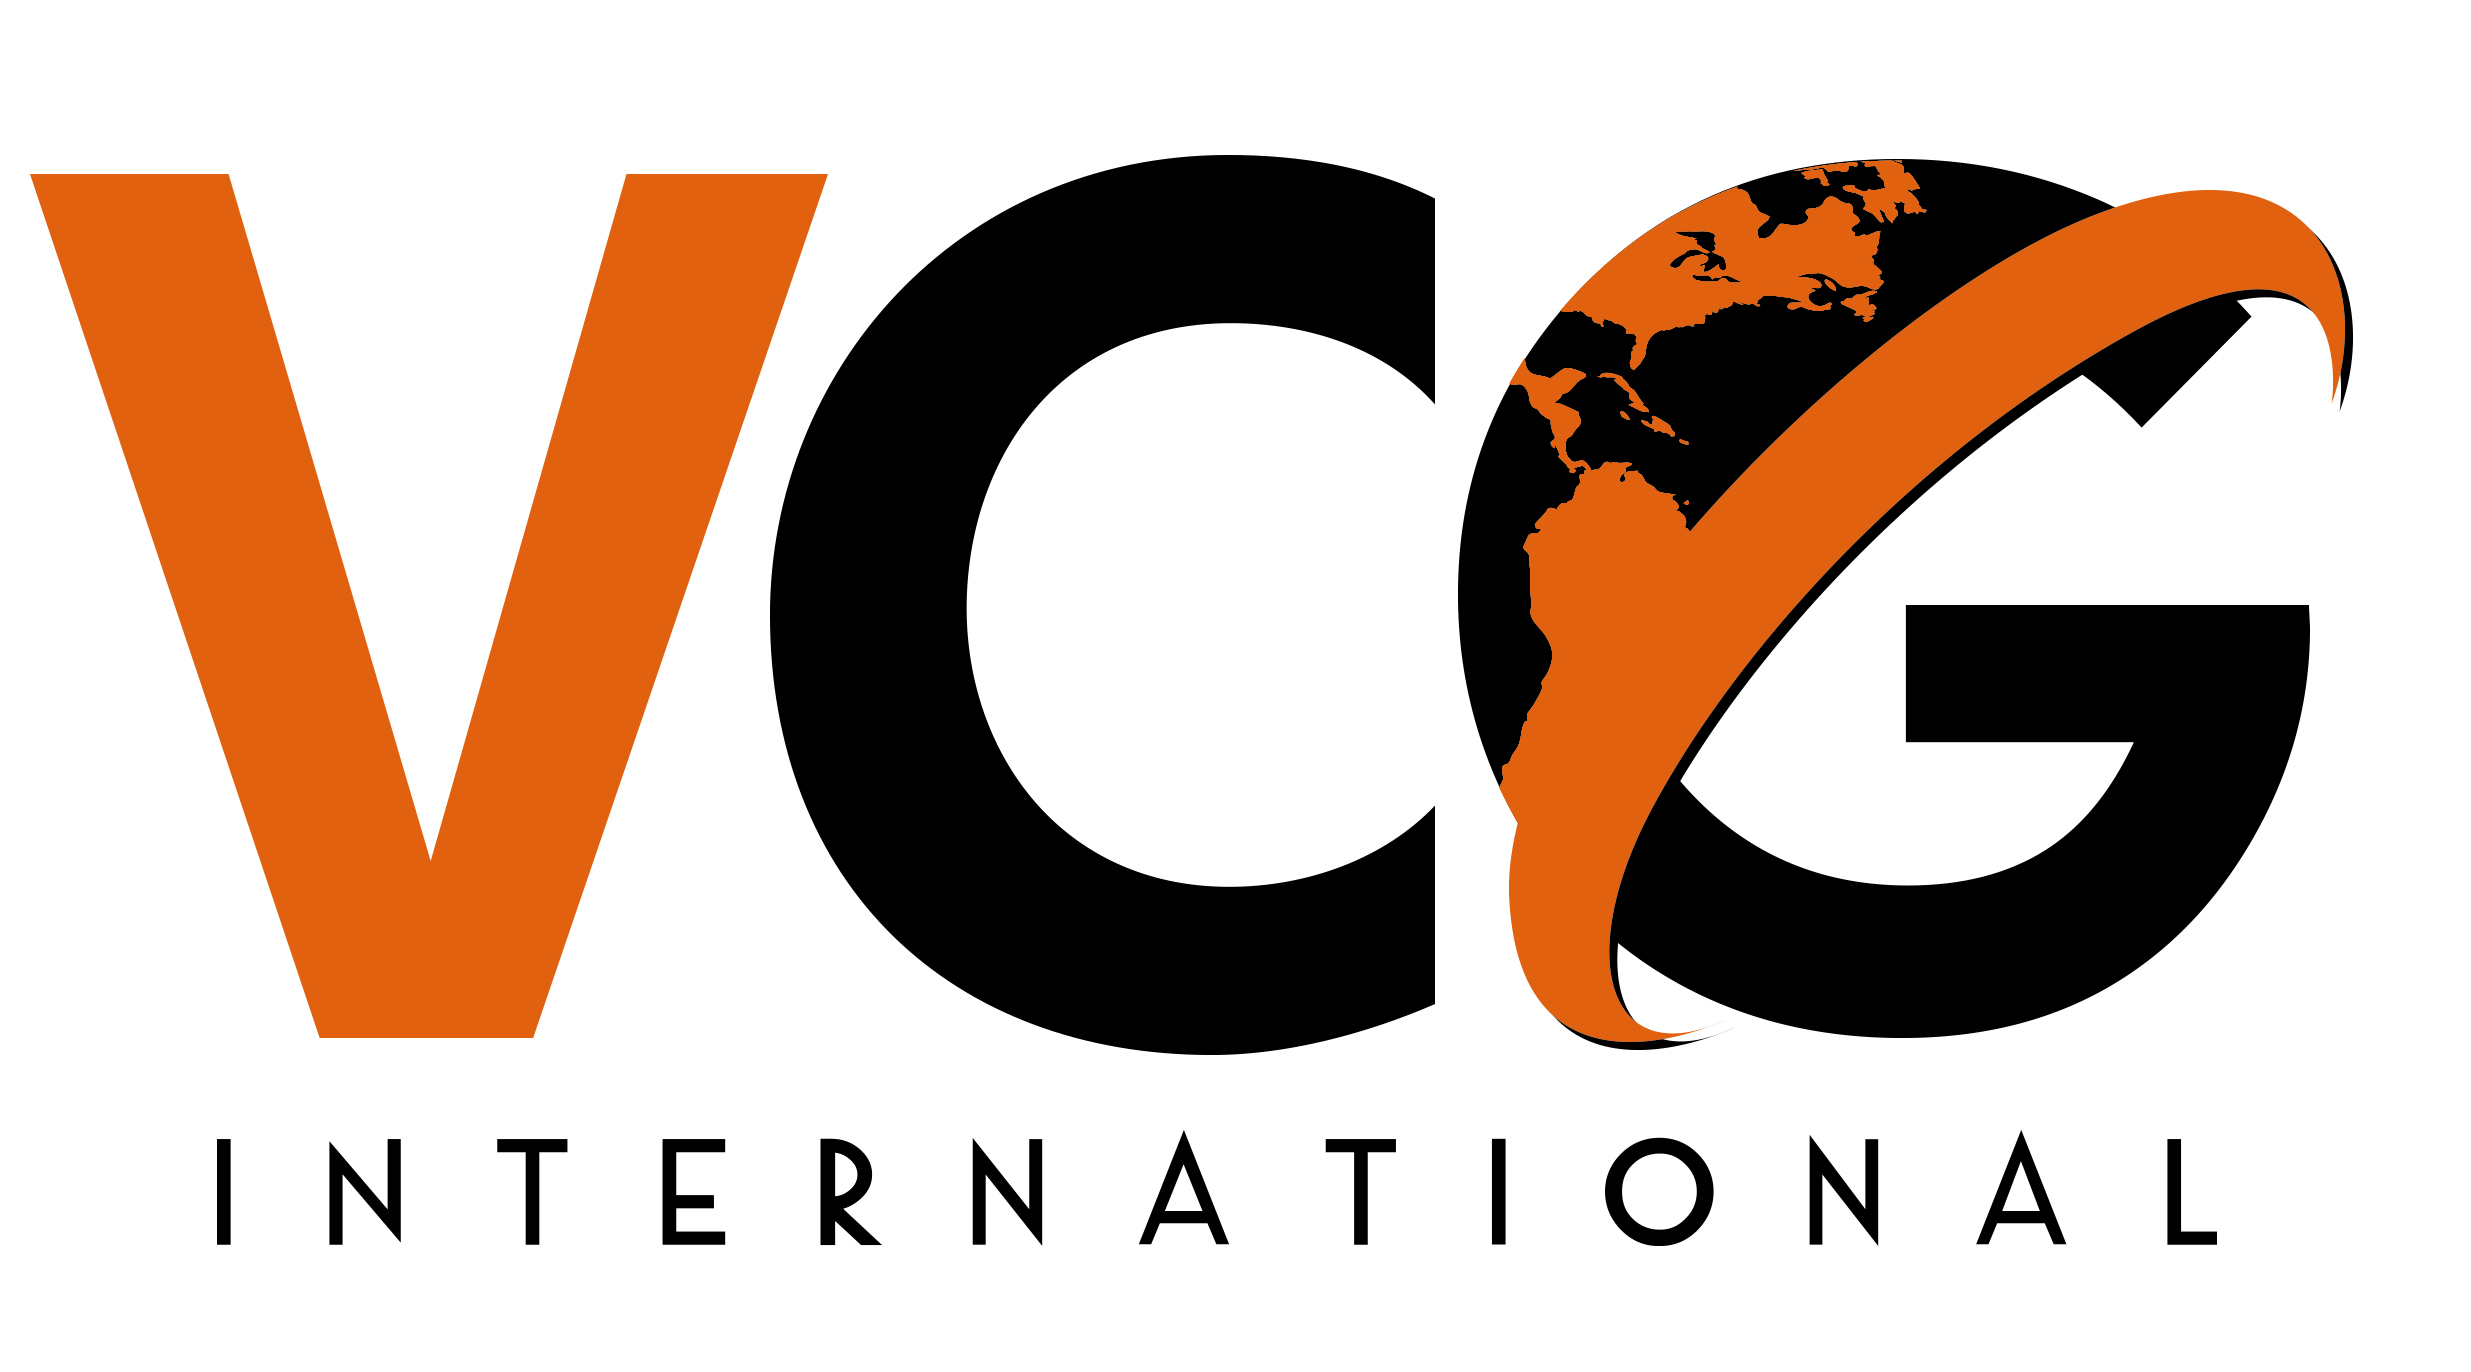 www.VCGInternational.com